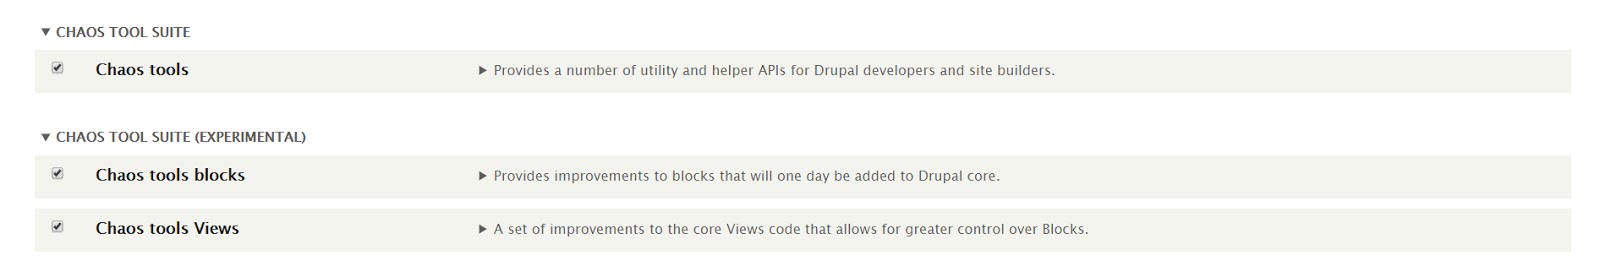 Как создать целевую страницу для Drupal с помощью панелей?